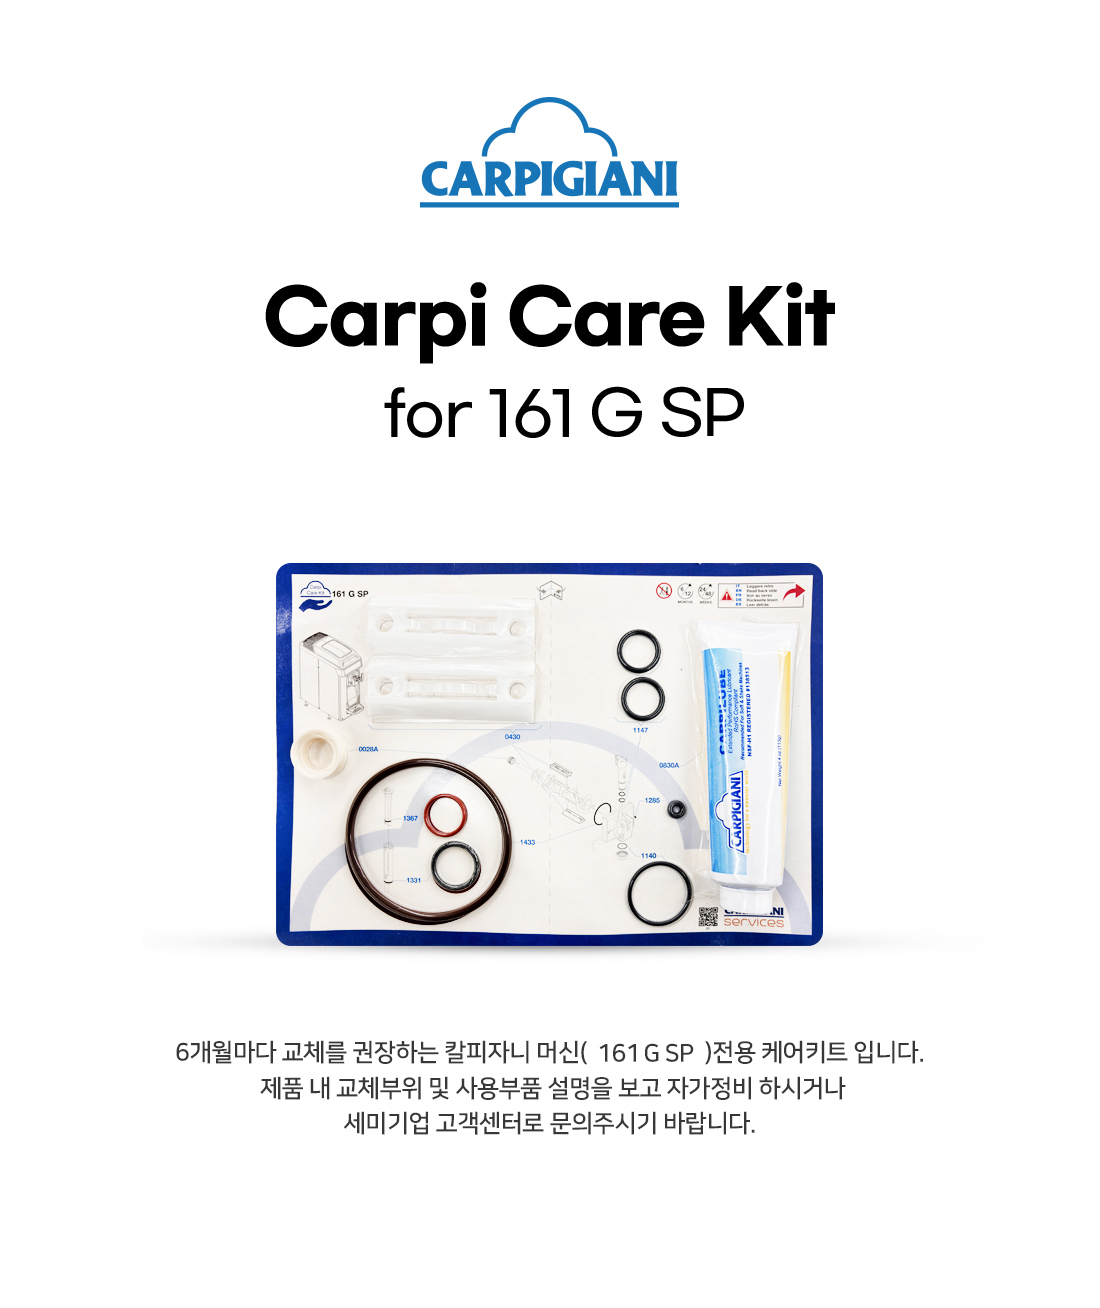 Carpi-Care-Kit-Gsp_170657.jpg